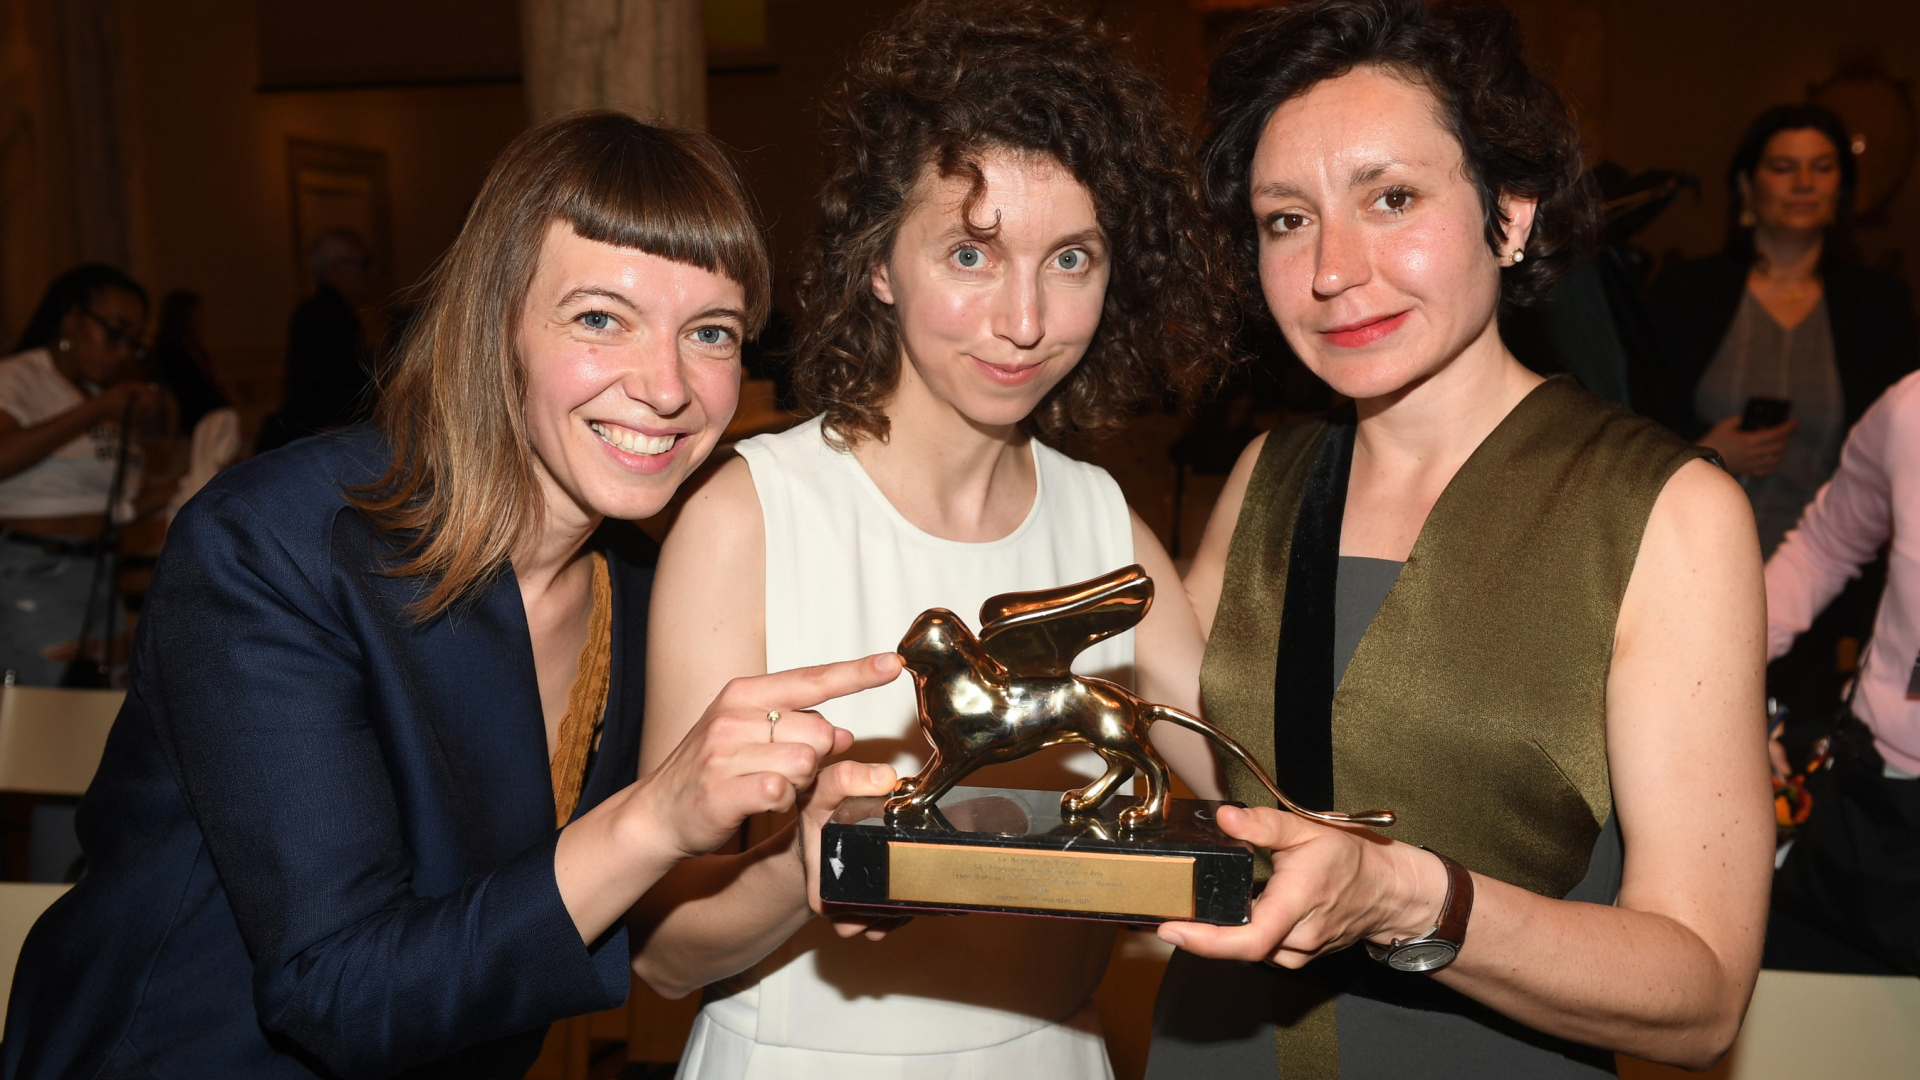 Die Künstlerinnen Lina Lapelyte, Rugile Barzdziukaite und Vaiva Grainyte (von links) mit dem Goldenen Löwen für den besten nationalen Beitrag auf der Biennale in Venedig. | dpa